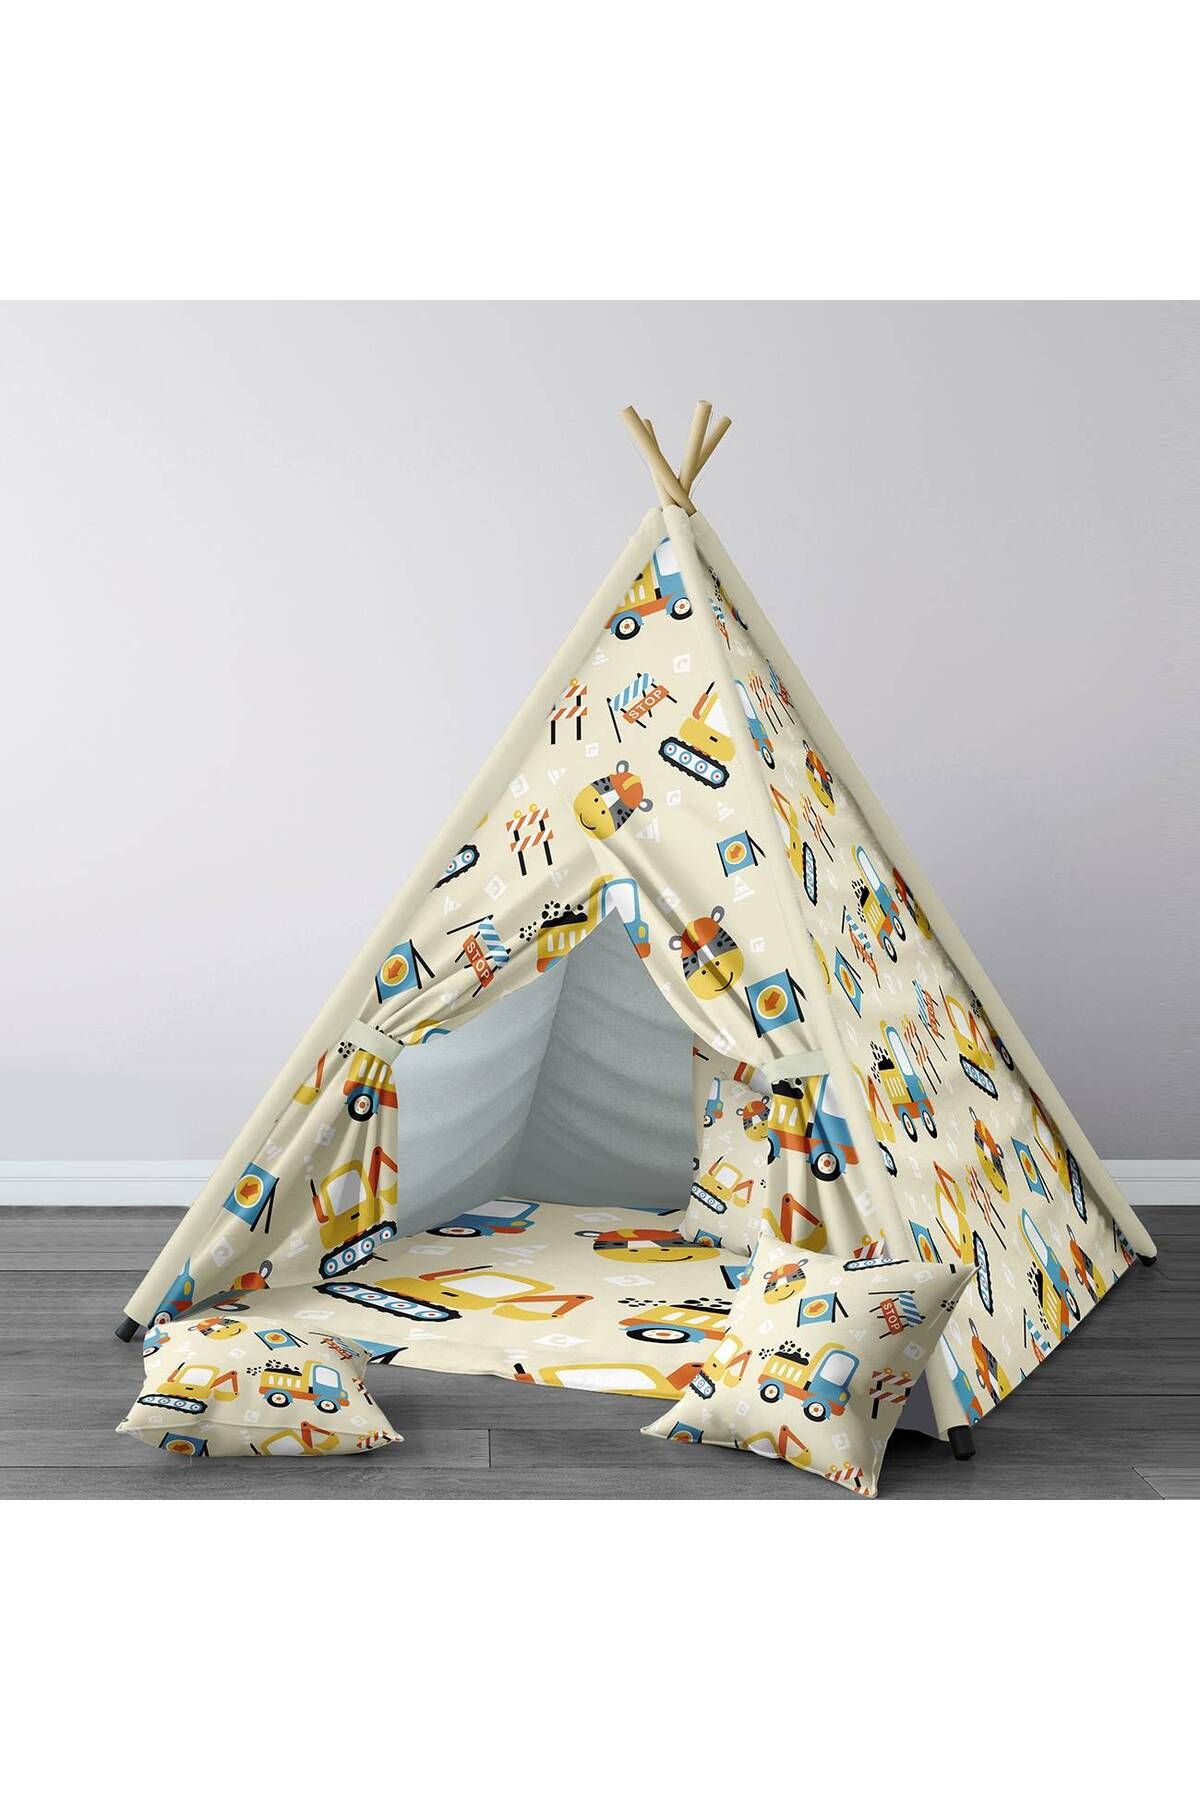 Lina Bebek, Çocuk Odası Minderli/Mindersiz Oyun Evi, Çadır Model 00006